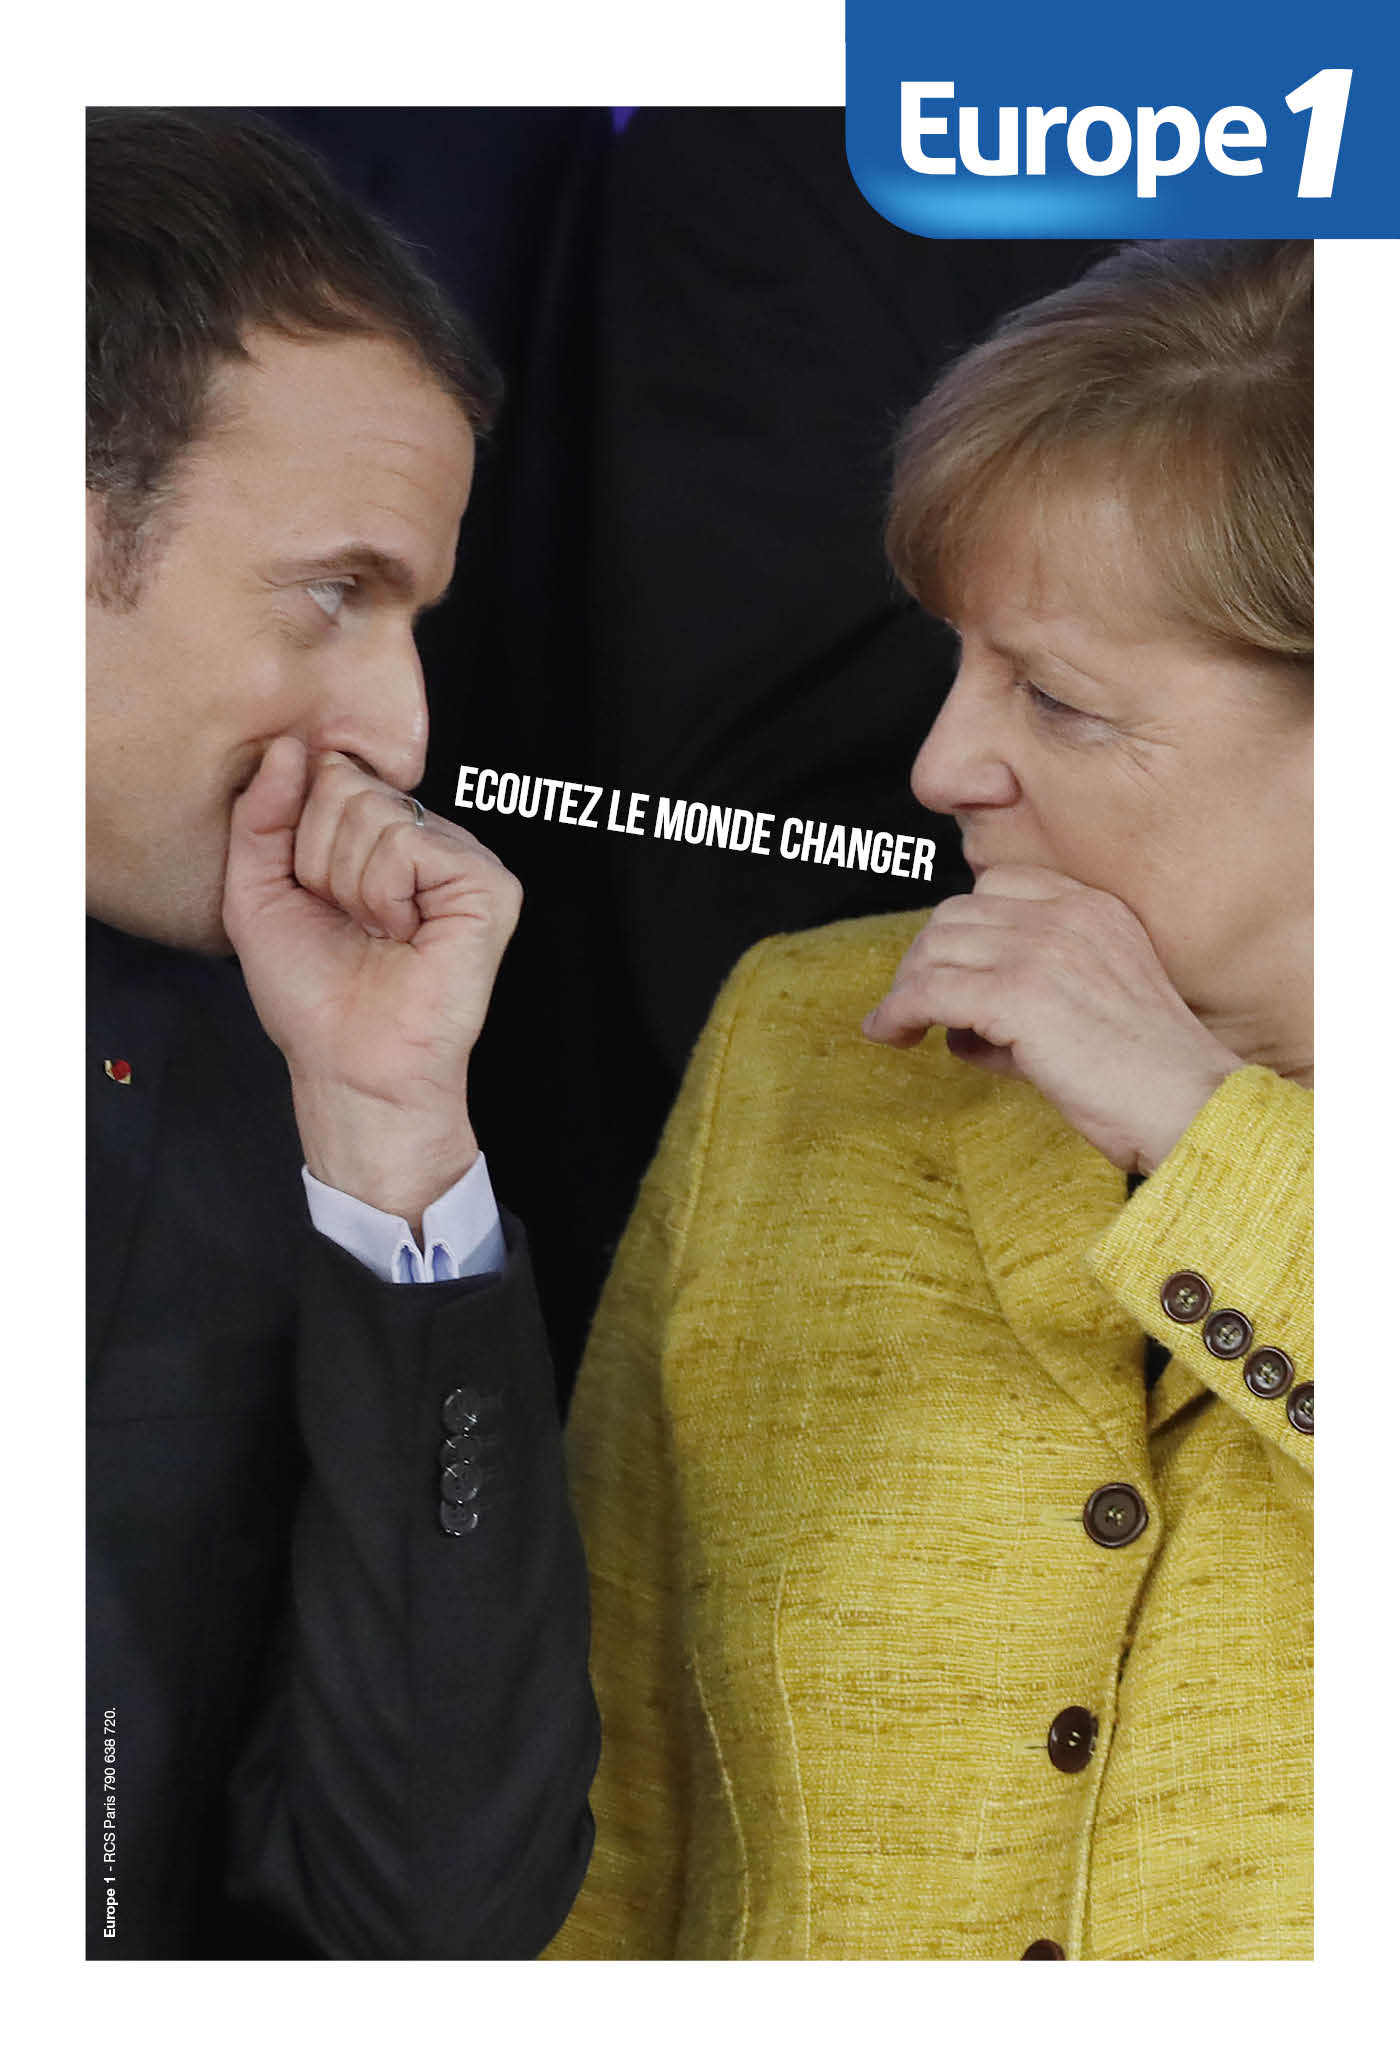 Une nouvelle campagne d'Europe 1 signée Romance